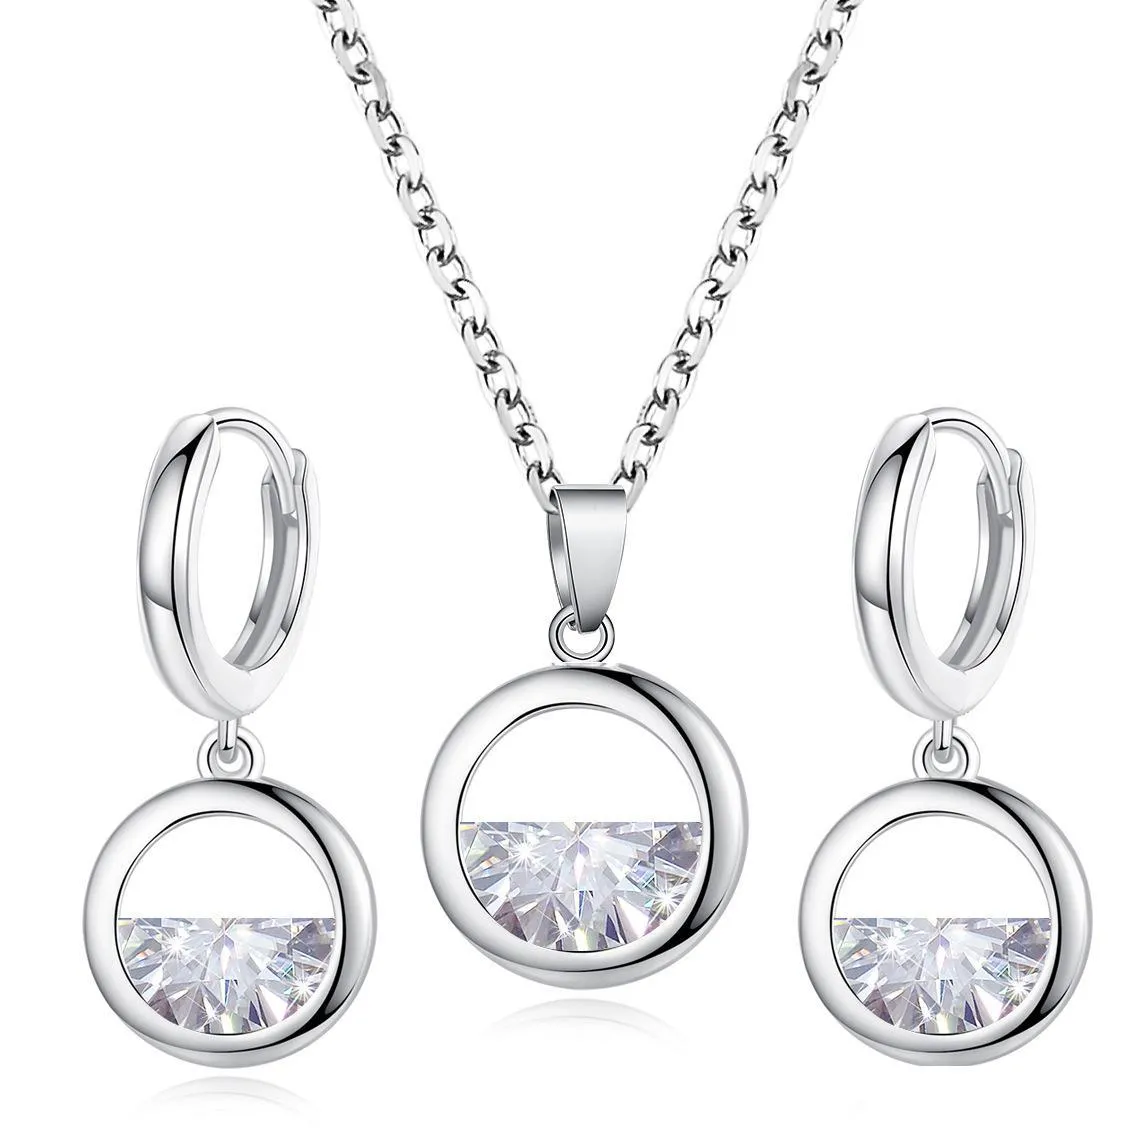 europe jewelry set womens zircon pendant simple necklace earrings set